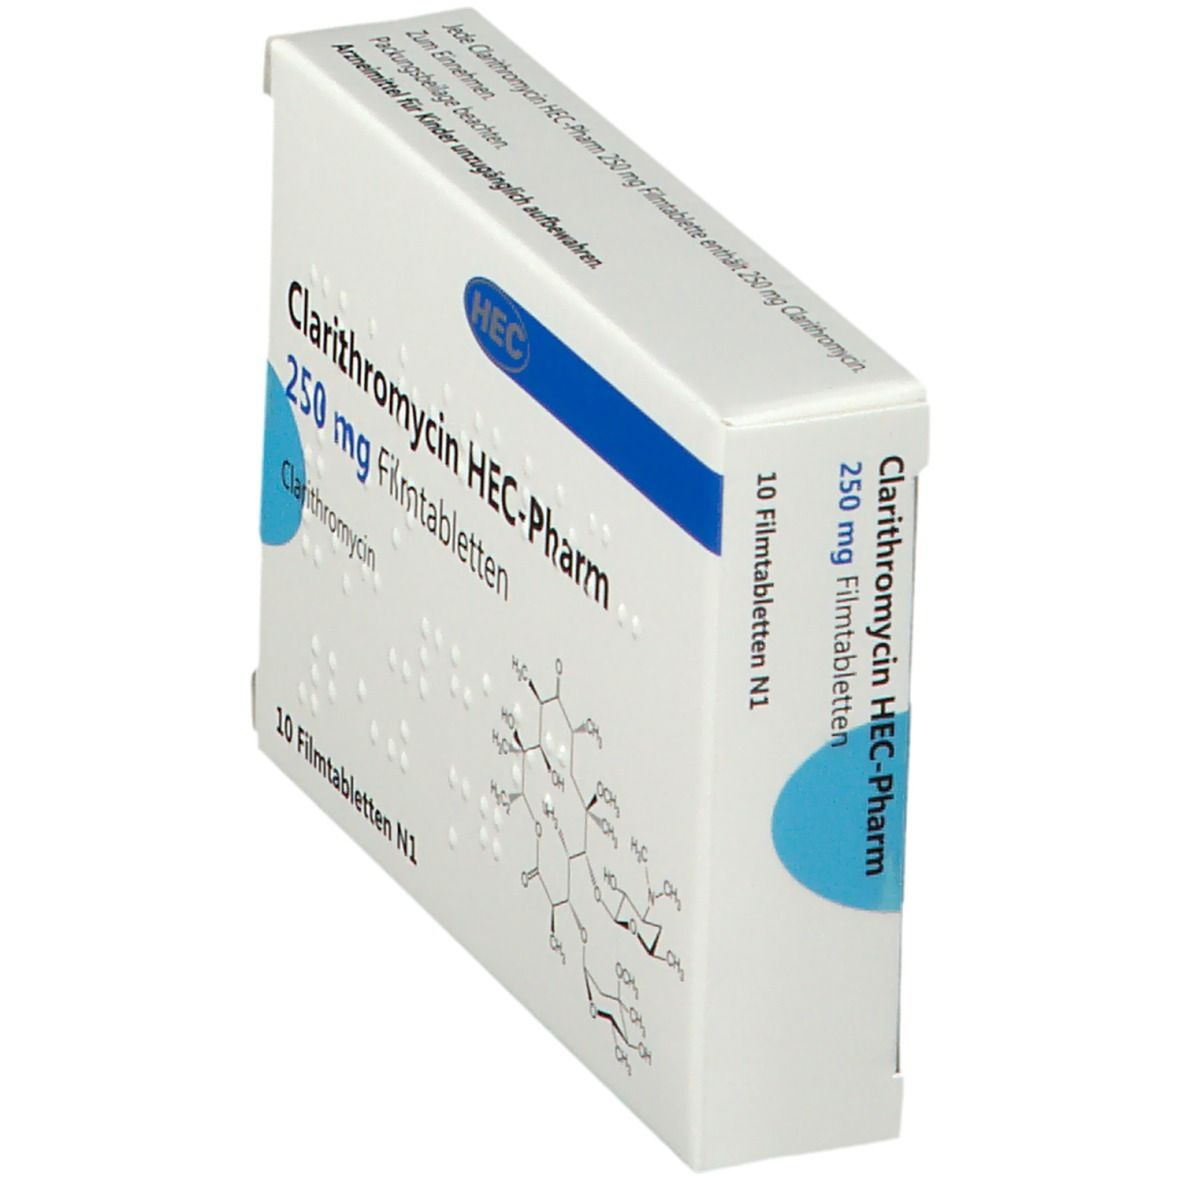 Clarithromycin HEC-Pharm 250 mg